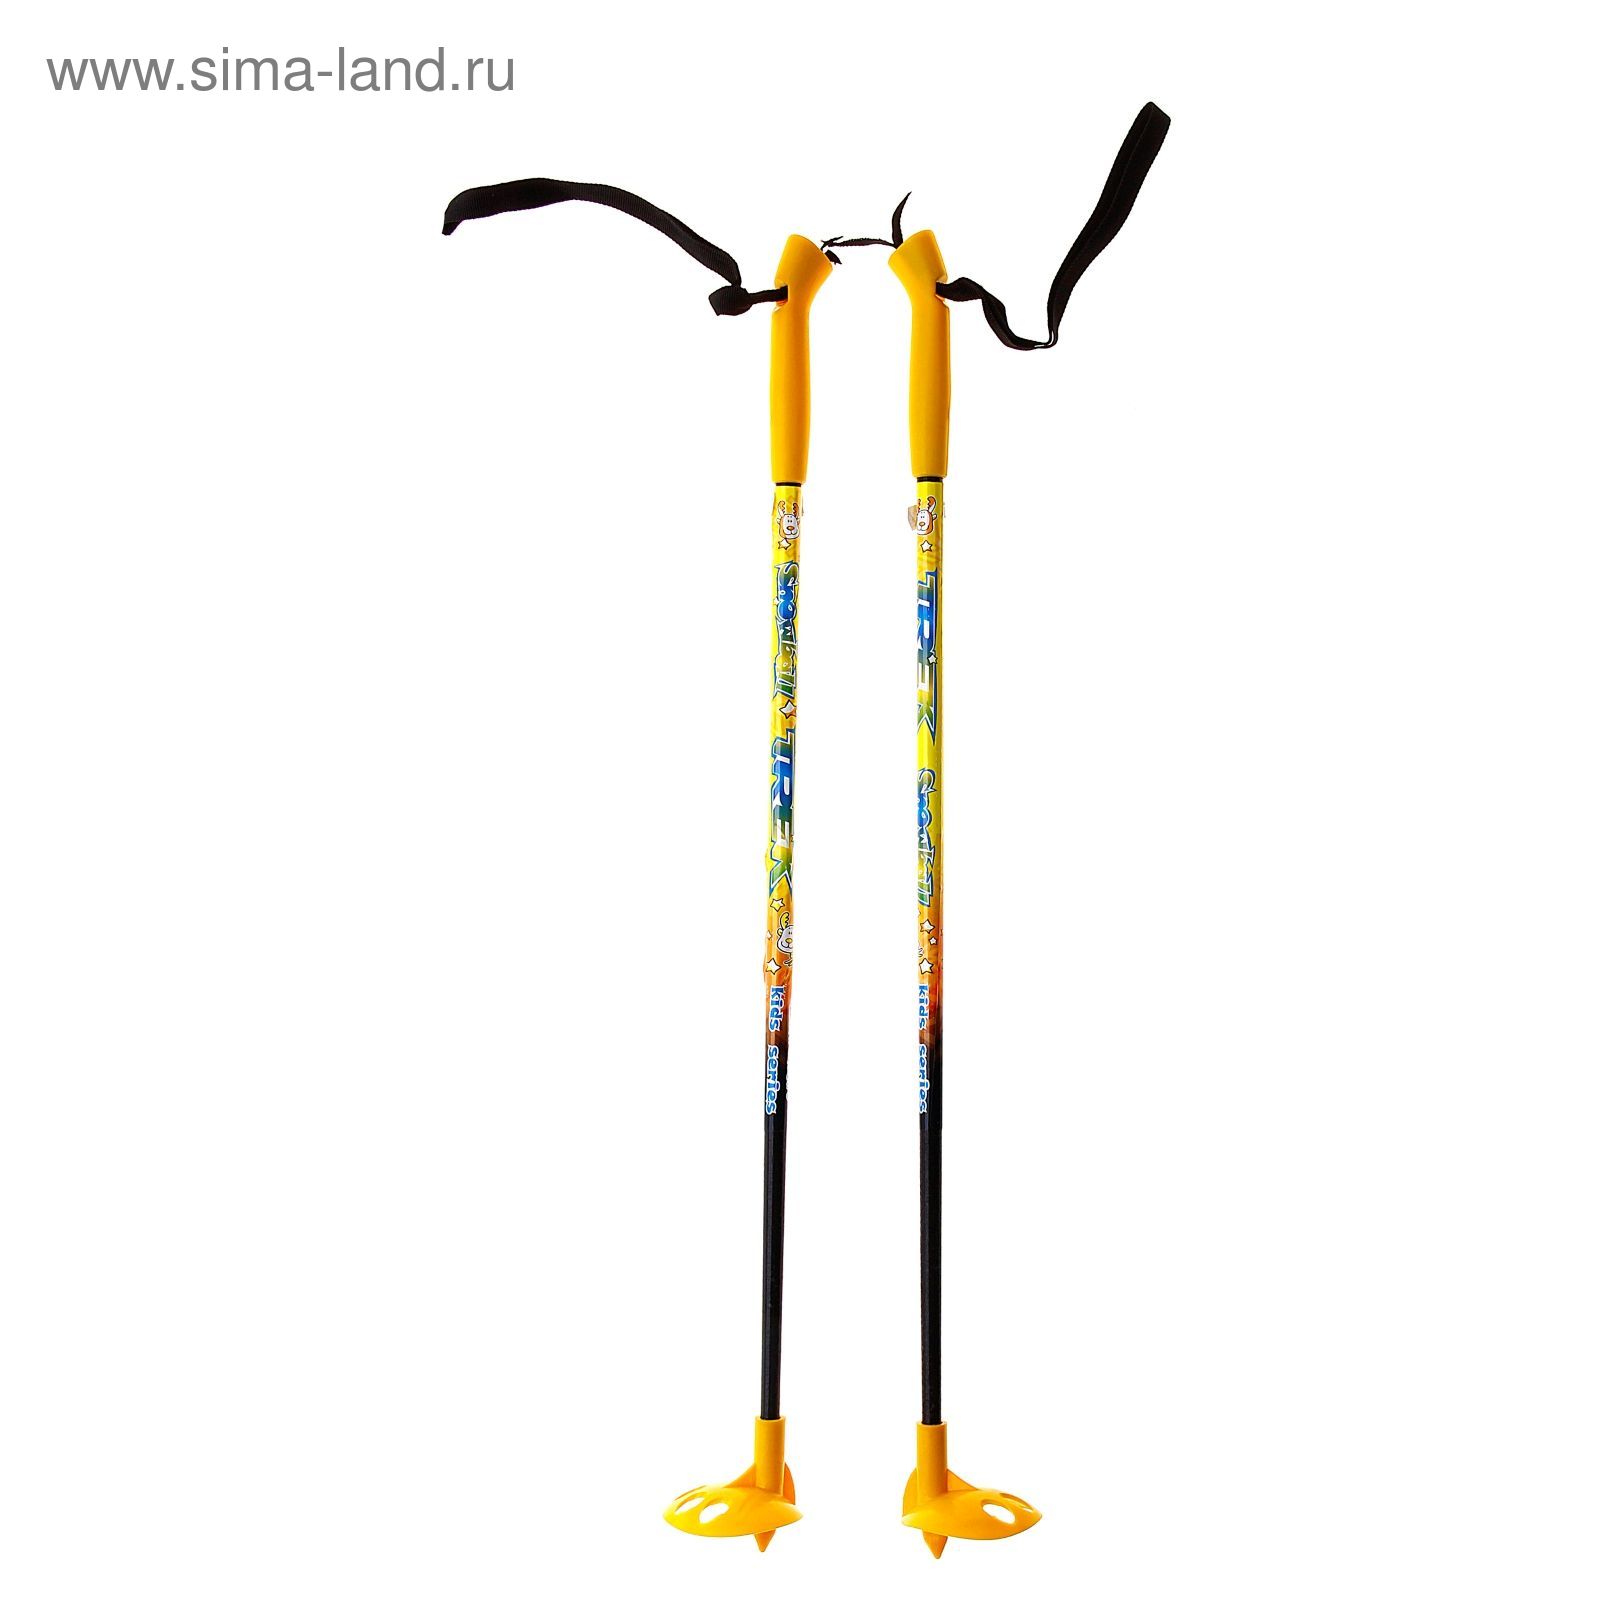 Палки лыжные стеклопластиковые TREK Classic (65 см), цвета микс